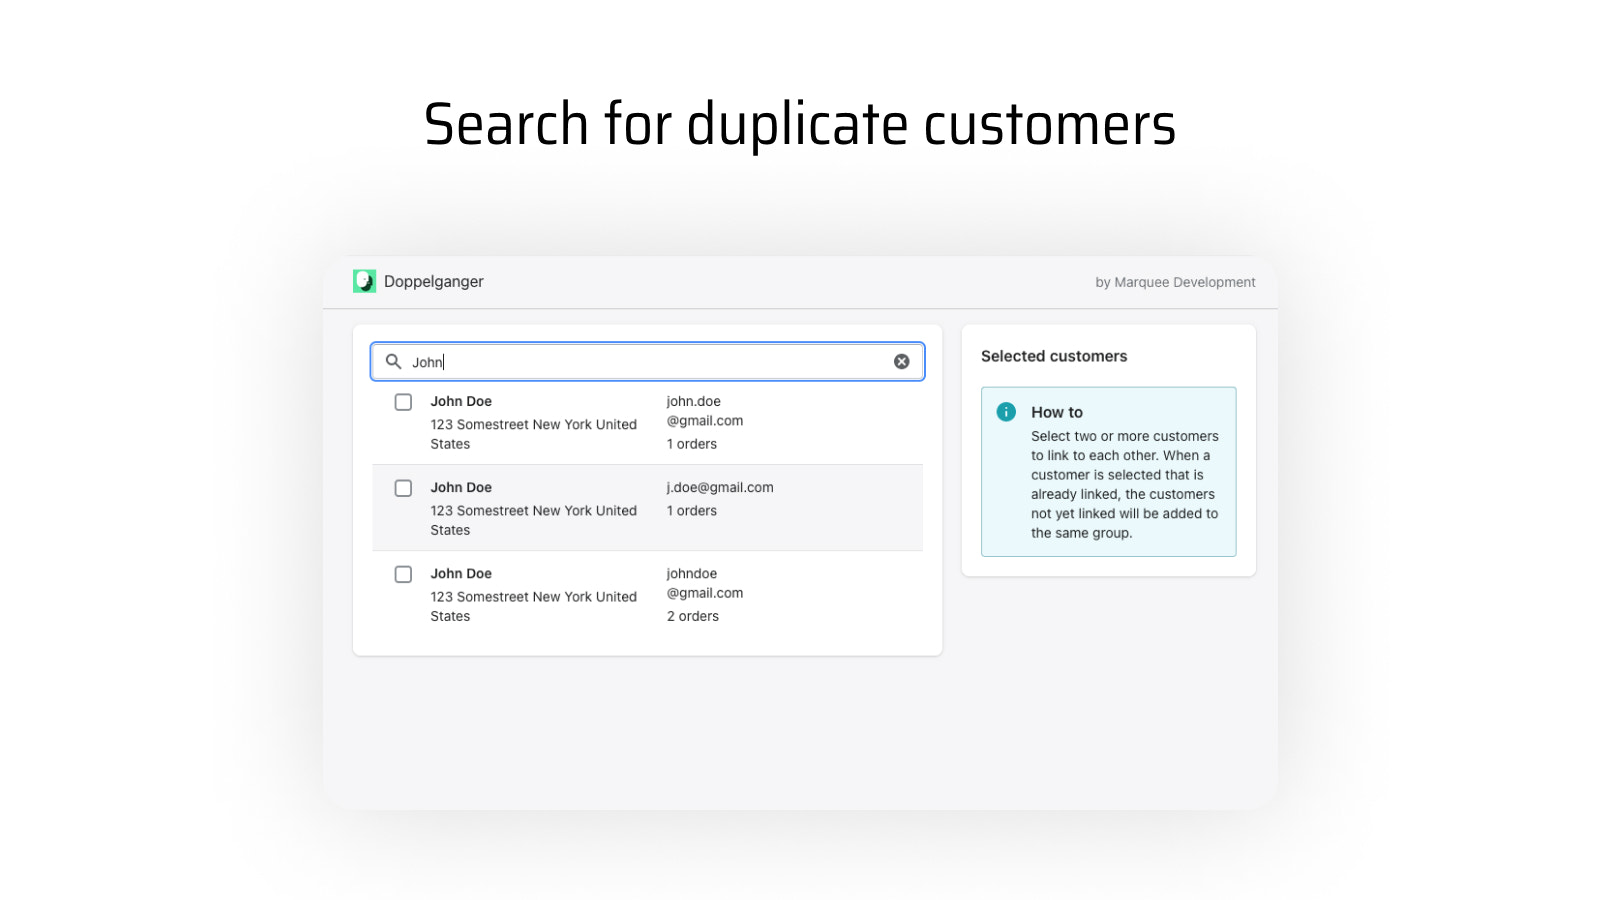 Lista de clientes filtrada por una consulta de búsqueda en una barra de búsqueda